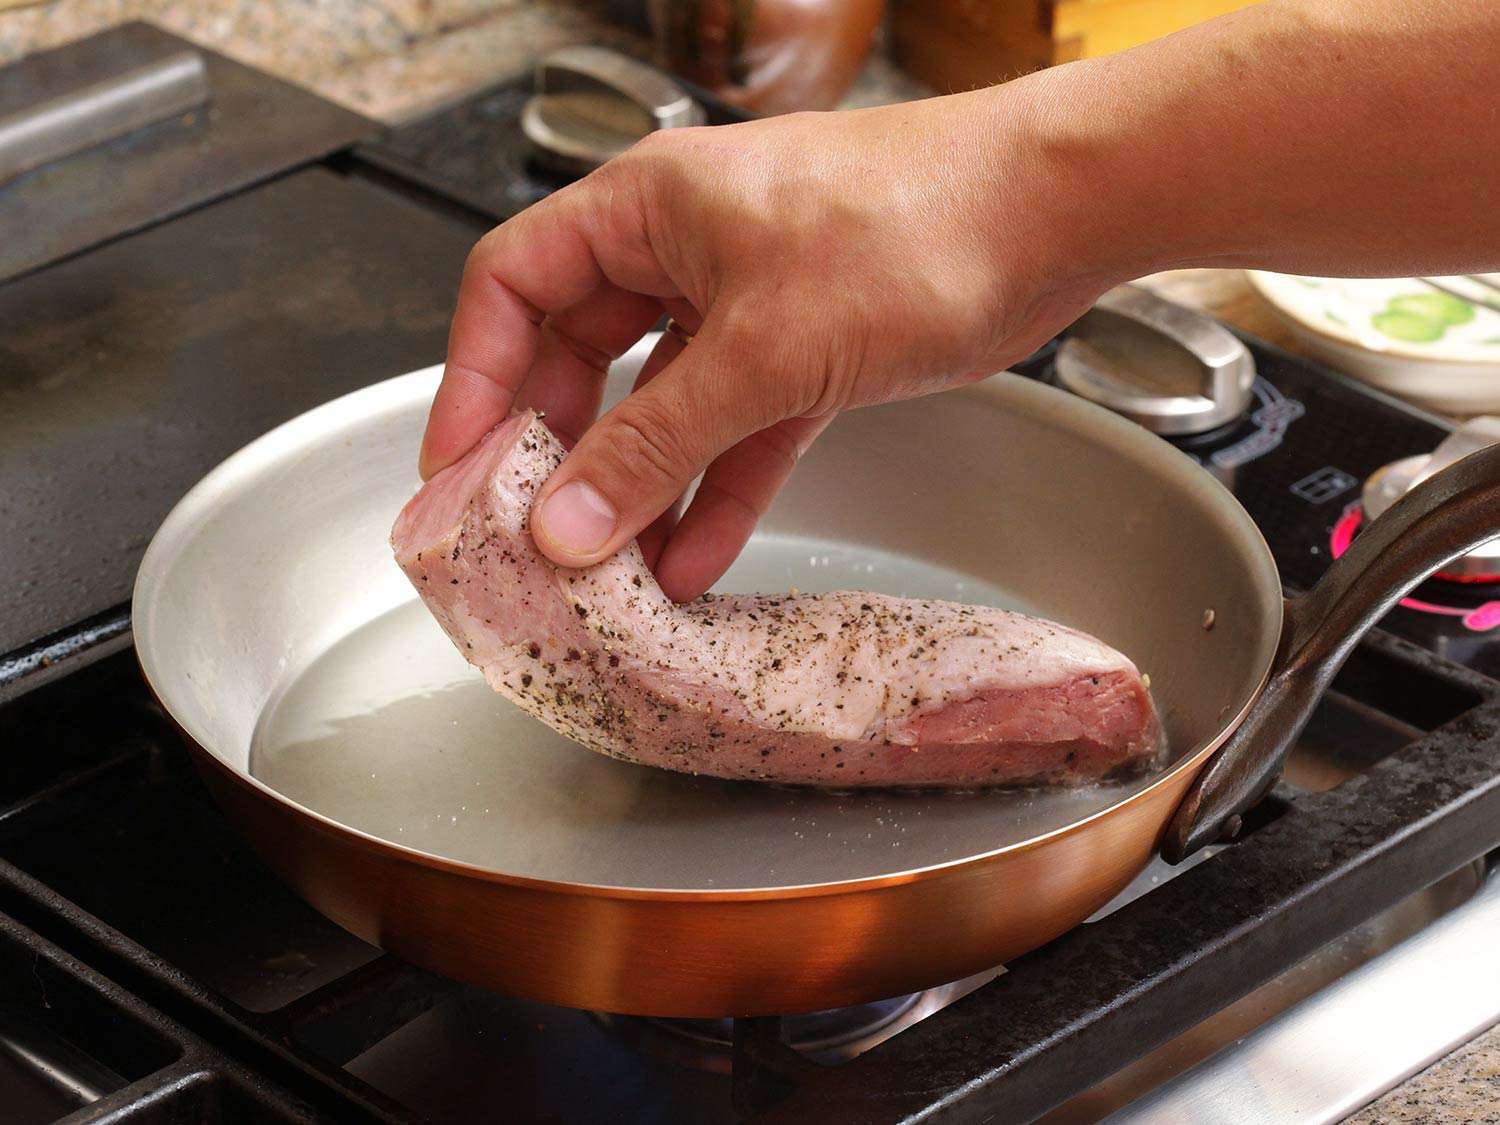 将真空烹调的猪里脊肉放入热油煎锅中烤熟后食用。